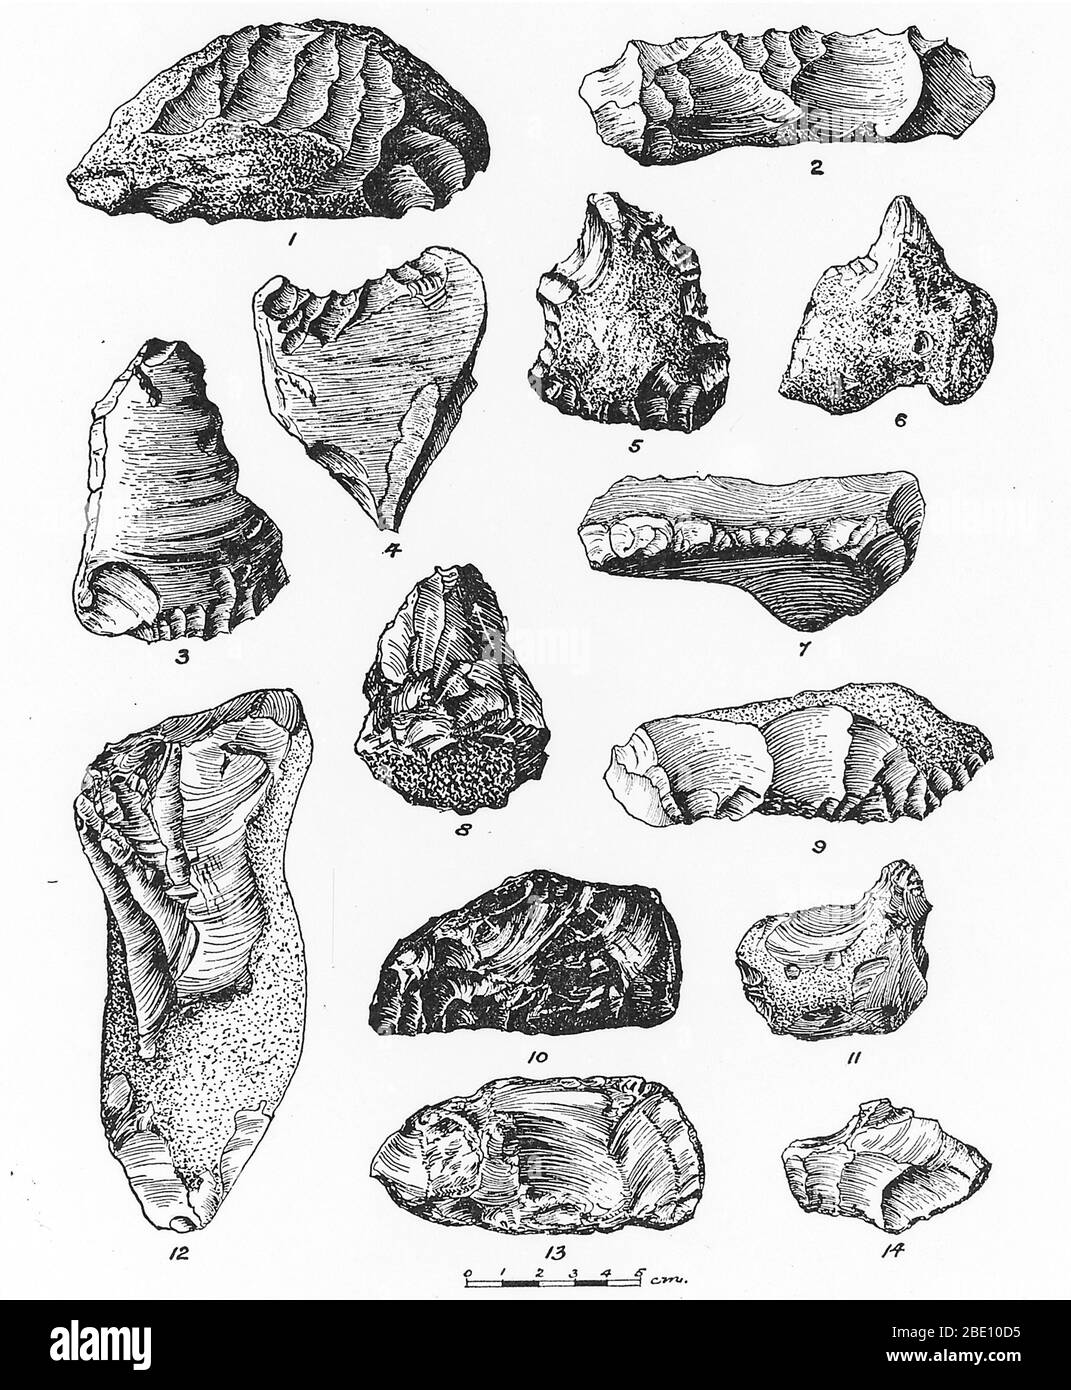 Eoliti da Francia, Belgio e Inghilterra. Un eolith è un nodulo a pietra focaia scheggiato. Gli Eoliti erano stati considerati come manufatti, i primi strumenti in pietra, ma ora si ritiene che siano prodotti naturalmente da processi geologici come la glaciazione. Foto Stock